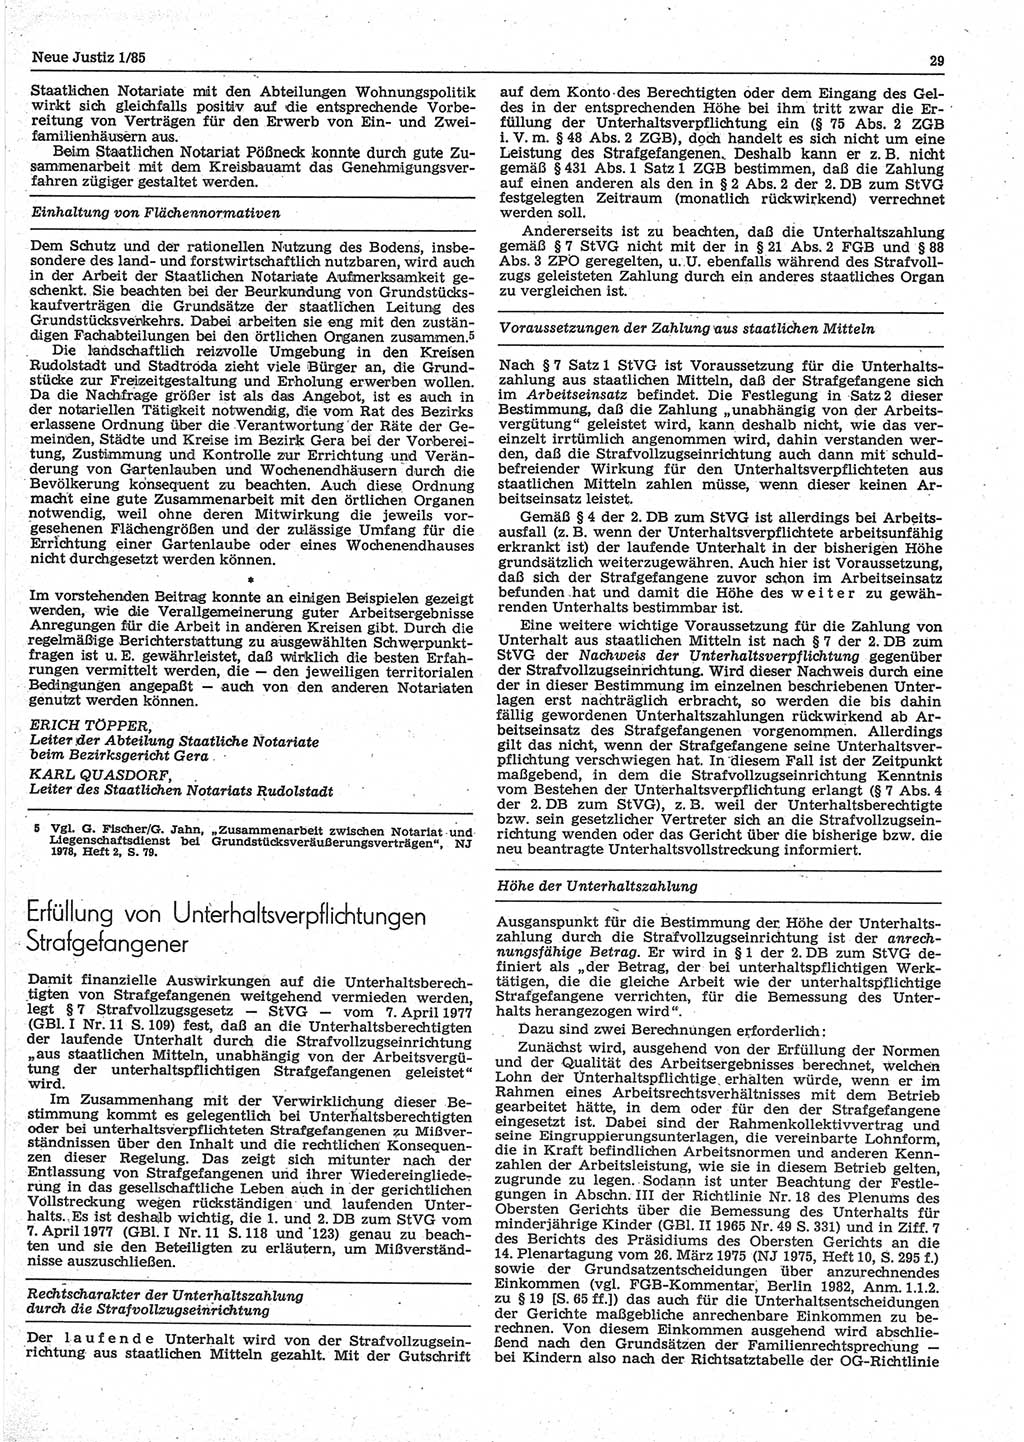 Neue Justiz (NJ), Zeitschrift für sozialistisches Recht und Gesetzlichkeit [Deutsche Demokratische Republik (DDR)], 39. Jahrgang 1985, Seite 29 (NJ DDR 1985, S. 29)